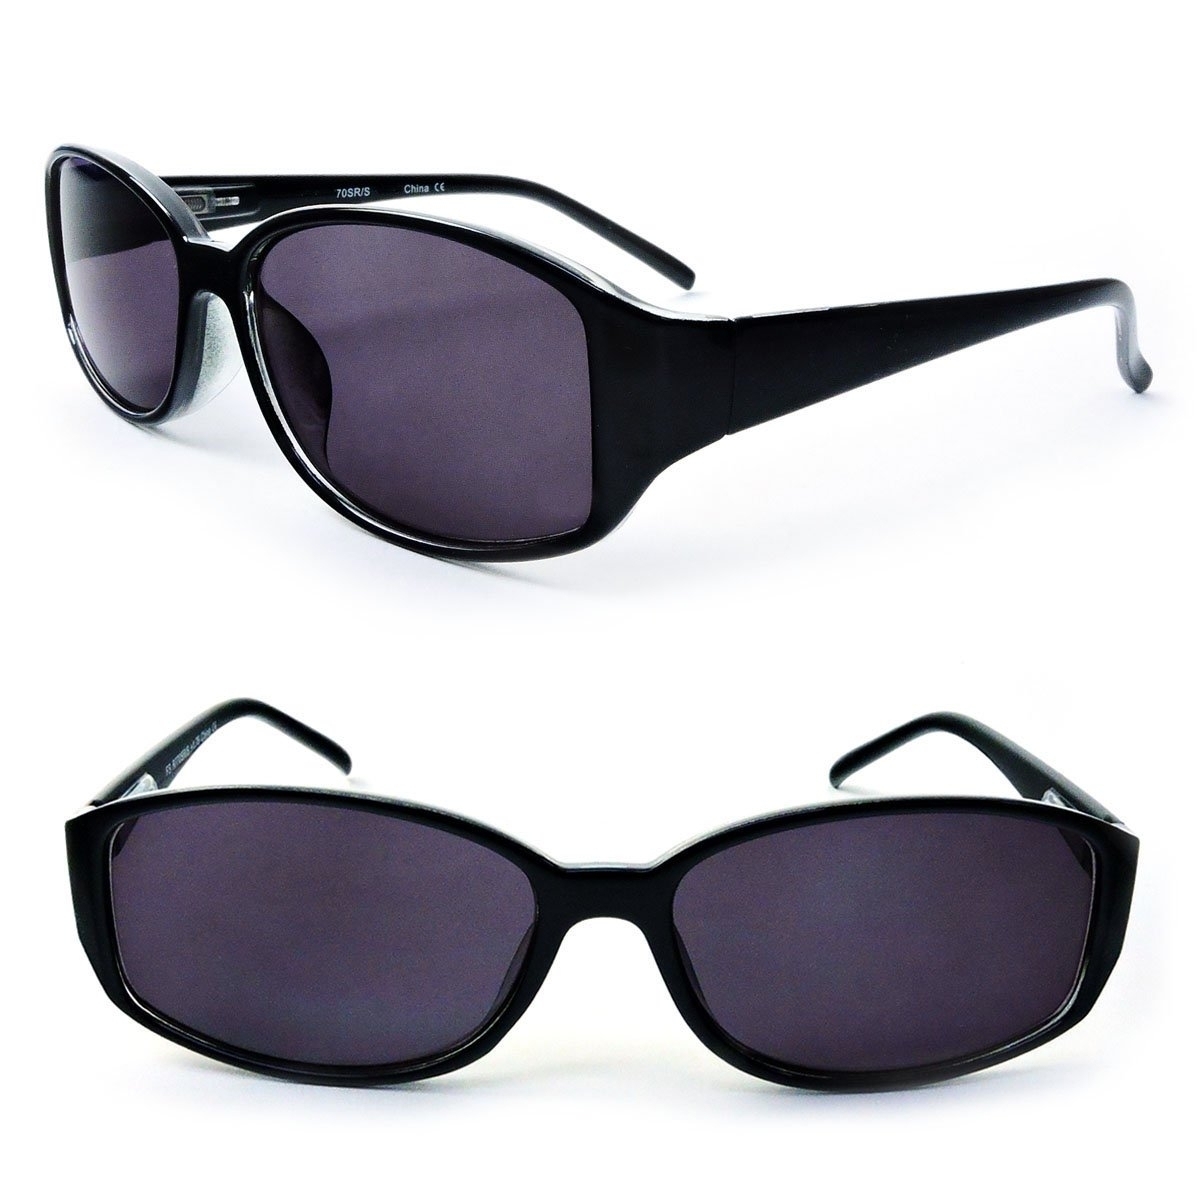 Classic Sun Readers Full Lens Spring Hinges Reading Sunglasses For Women - Black, +1.25